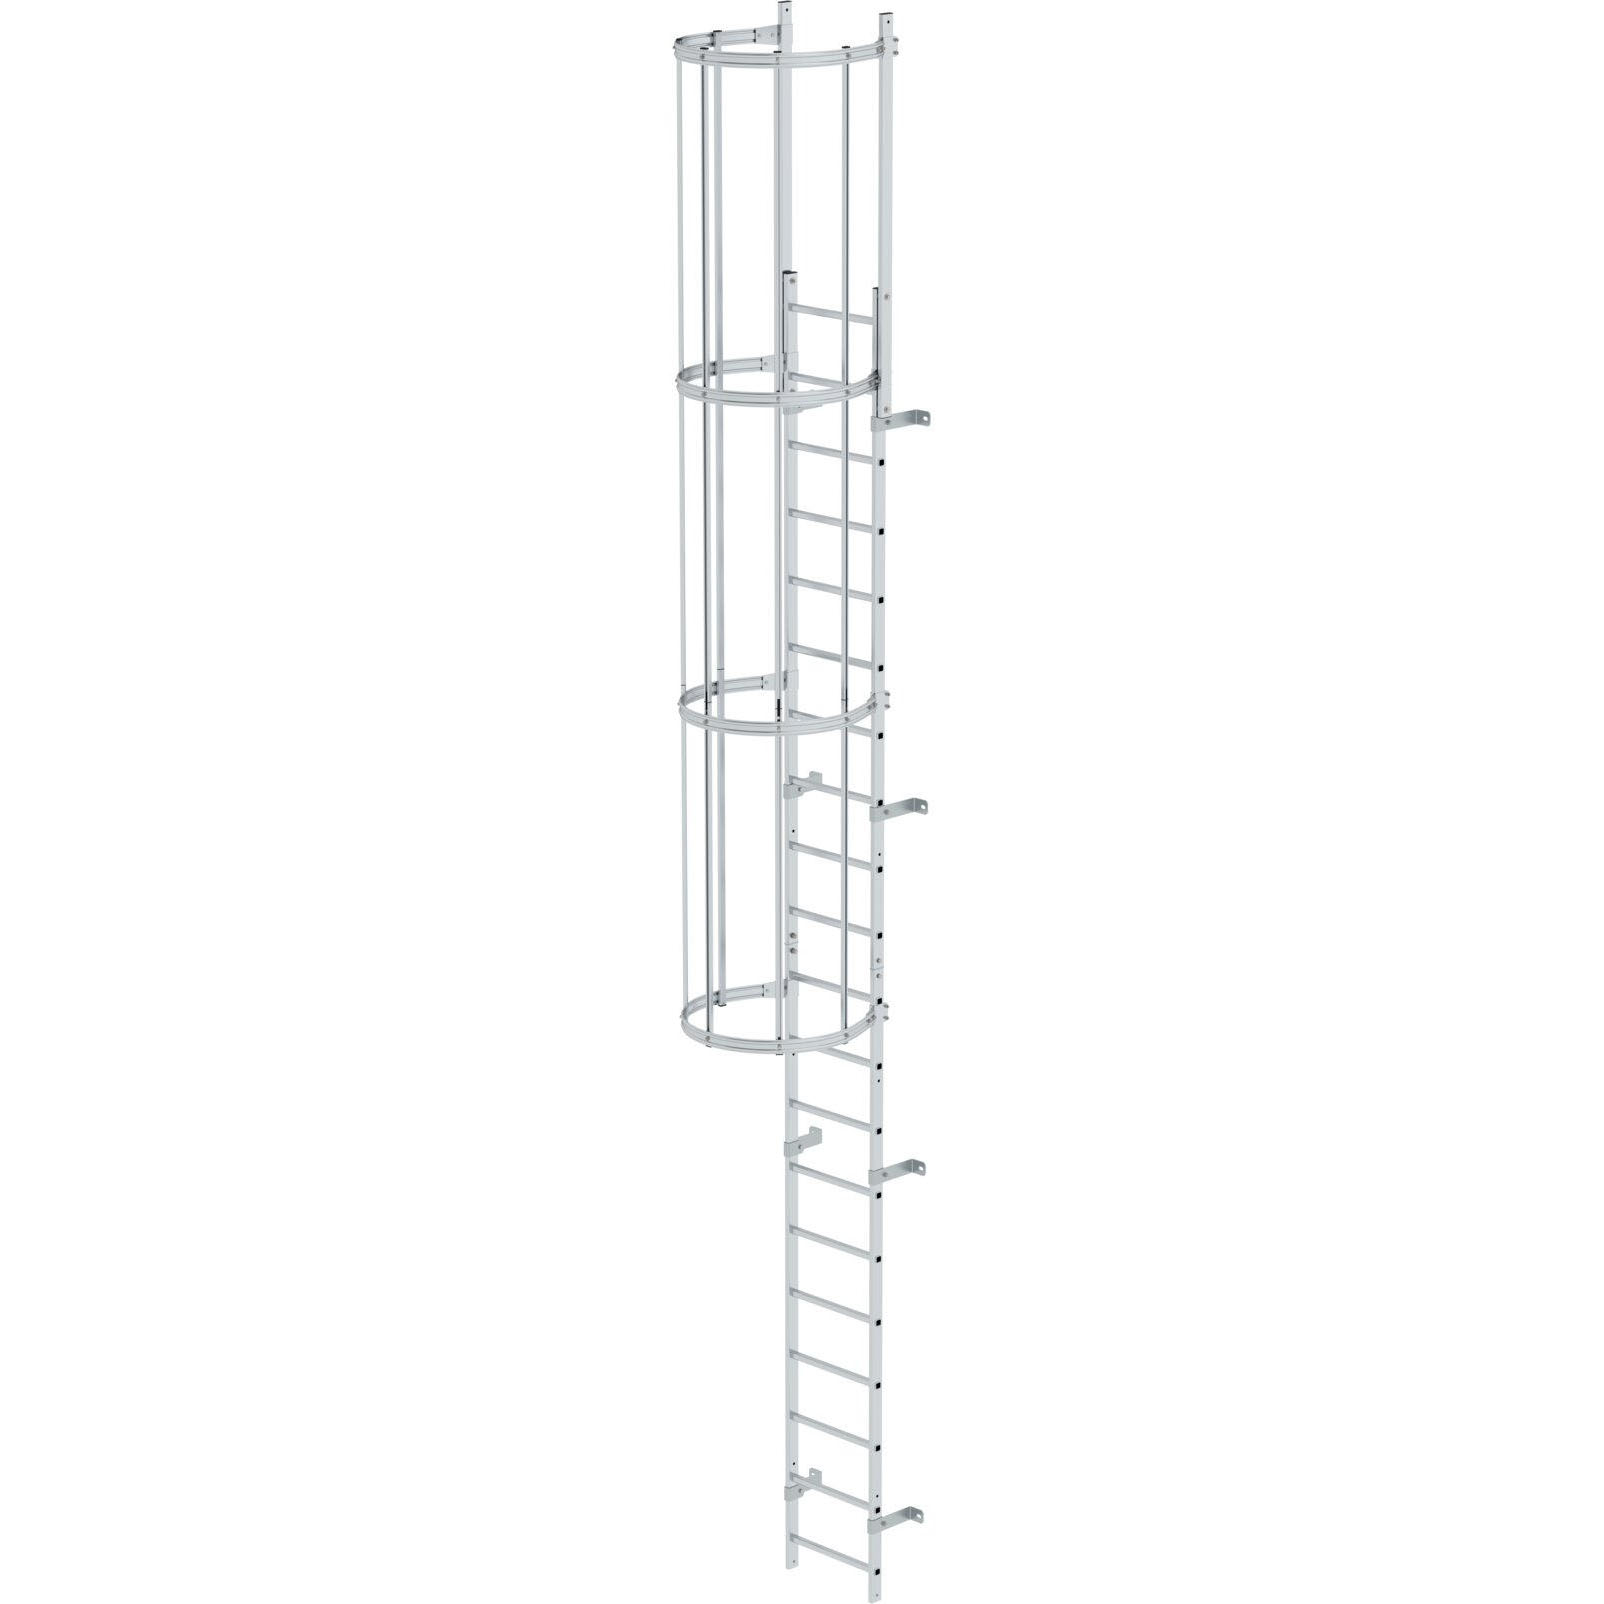 Однопролетная вертикальная лестница из пол. алюминия 6.80 м Munk 510105